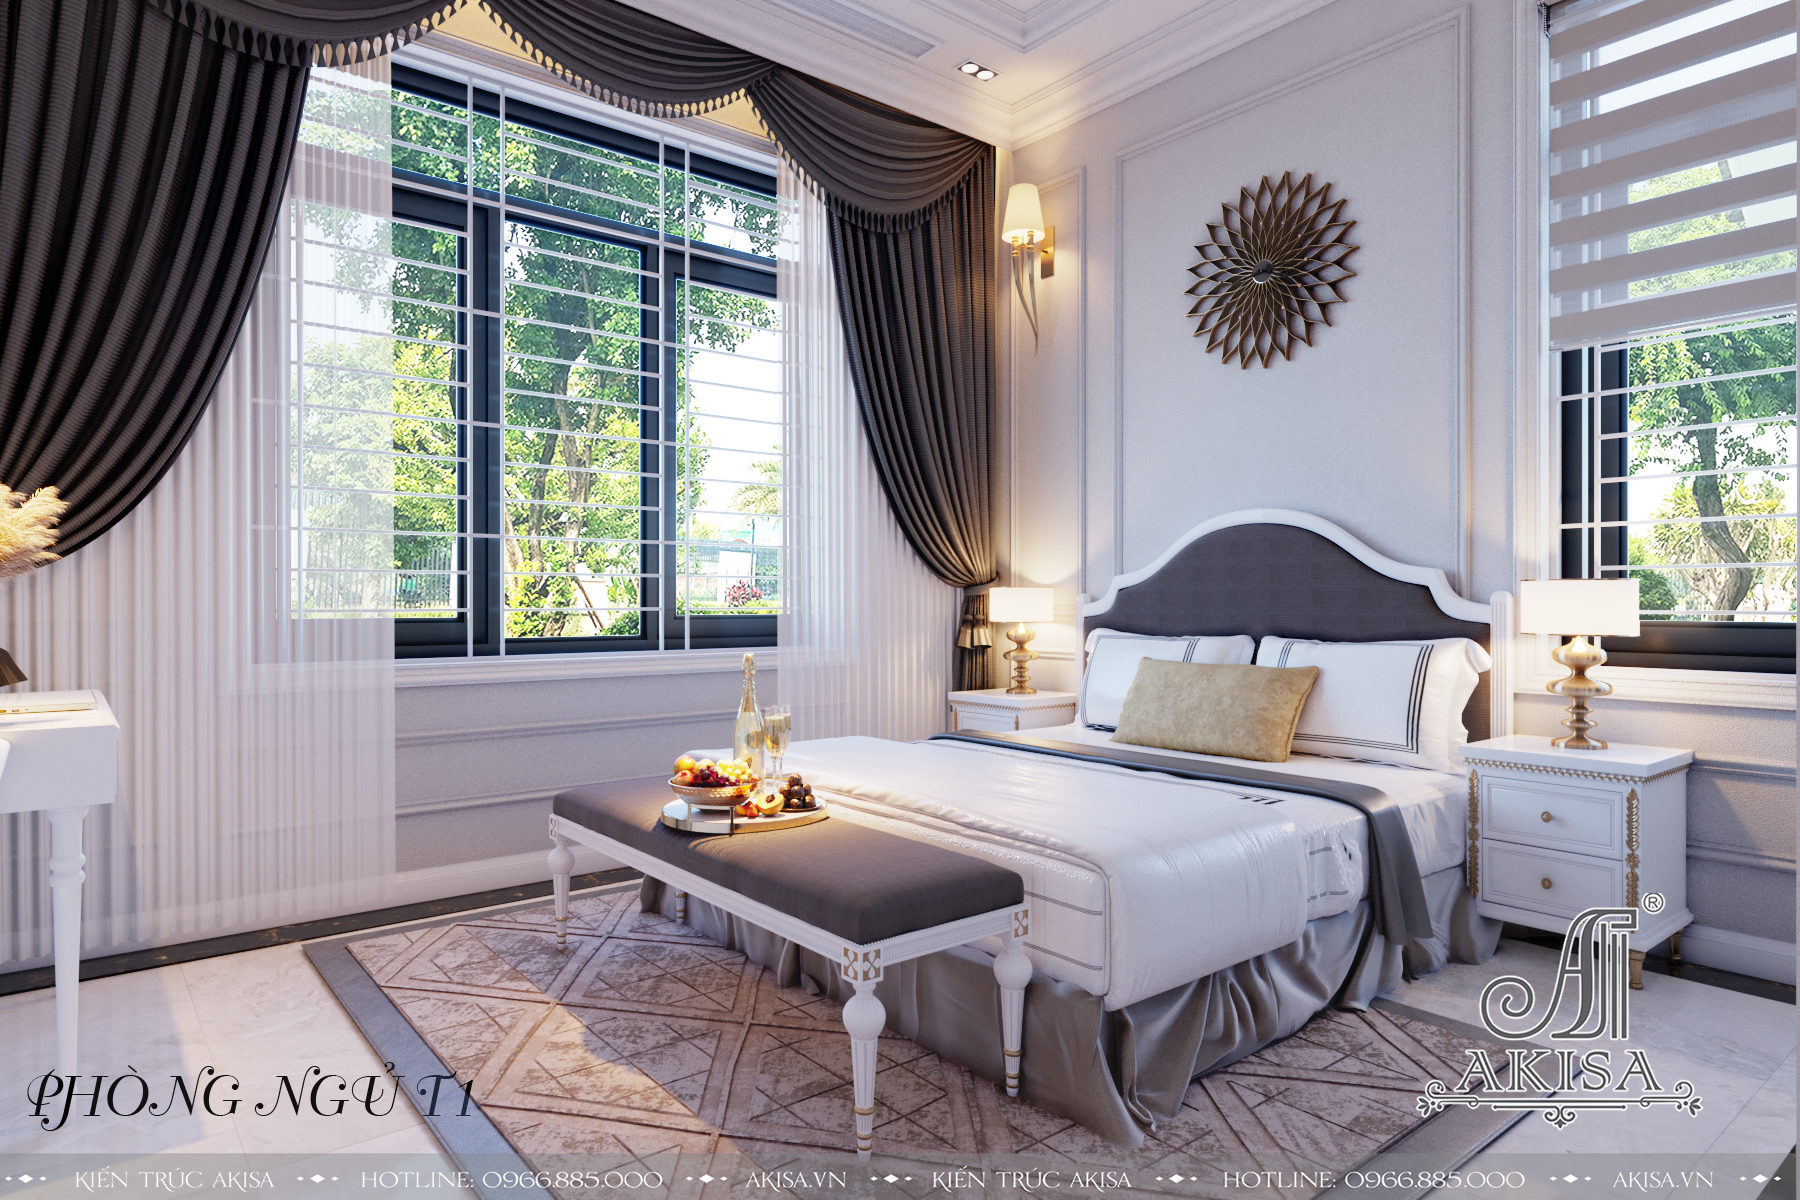 Phòng ngủ thông thoáng với hệ cửa sổ lớn giúp đón ánh nắng và không khí thiên nhiên, mang đến những giấc ngủ ngon và không gian thư giãn cho gia đình